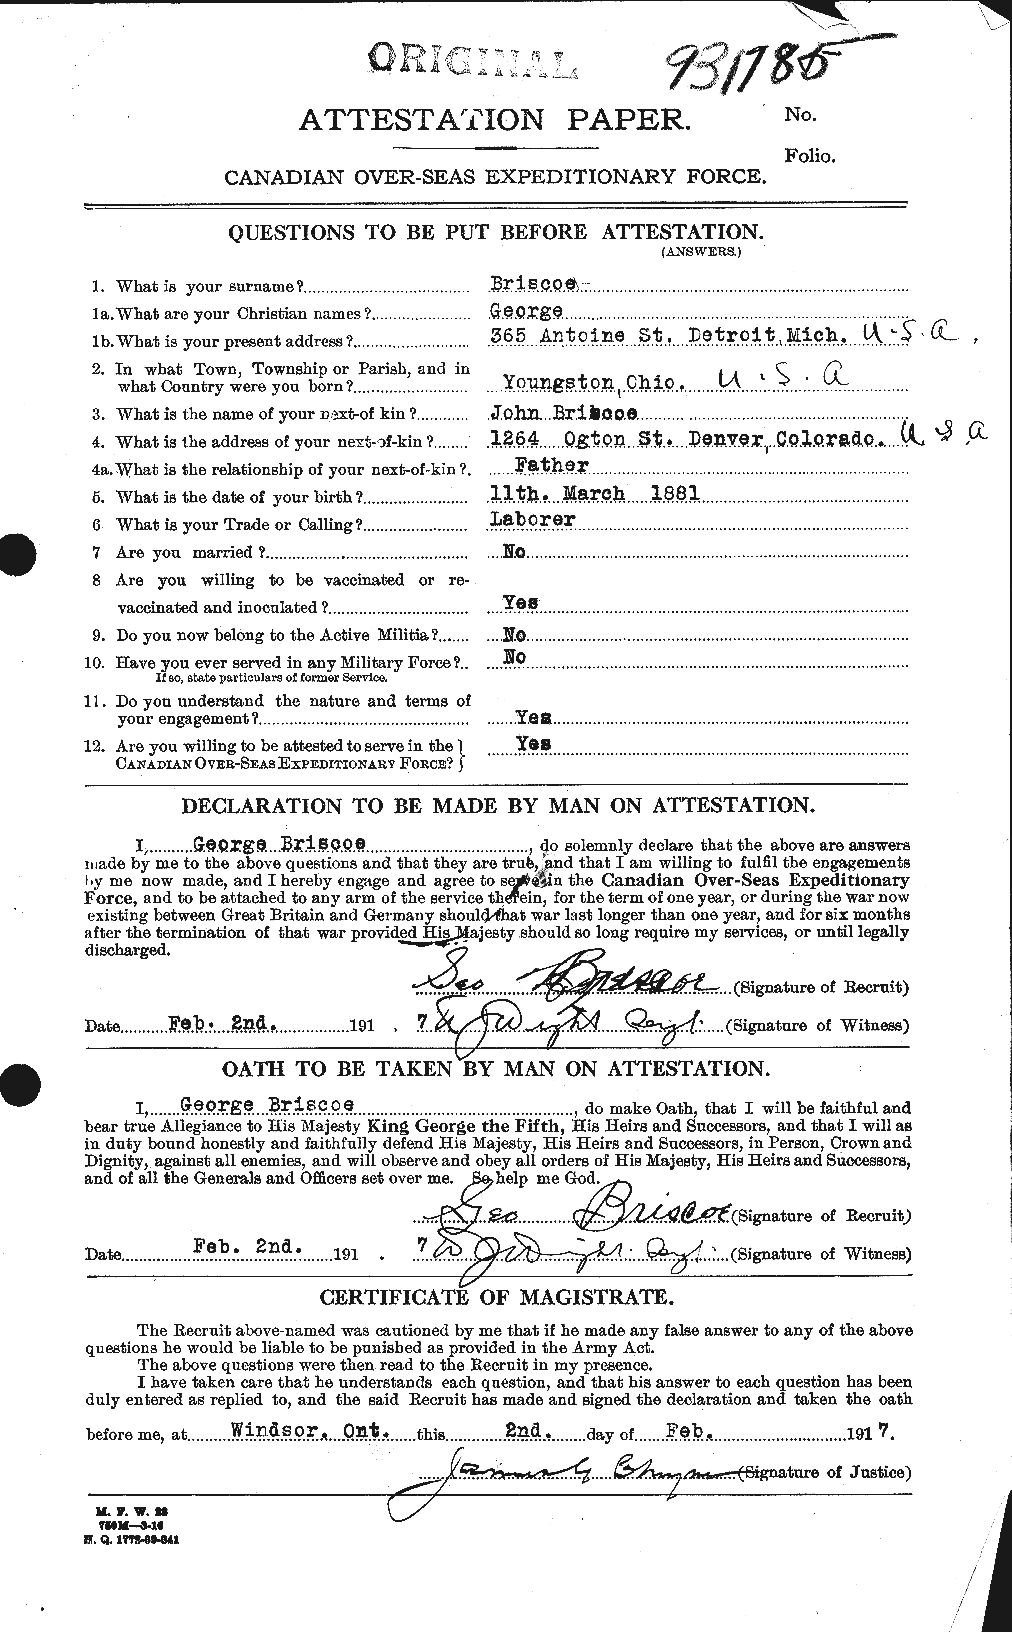 Dossiers du Personnel de la Première Guerre mondiale - CEC 259472a